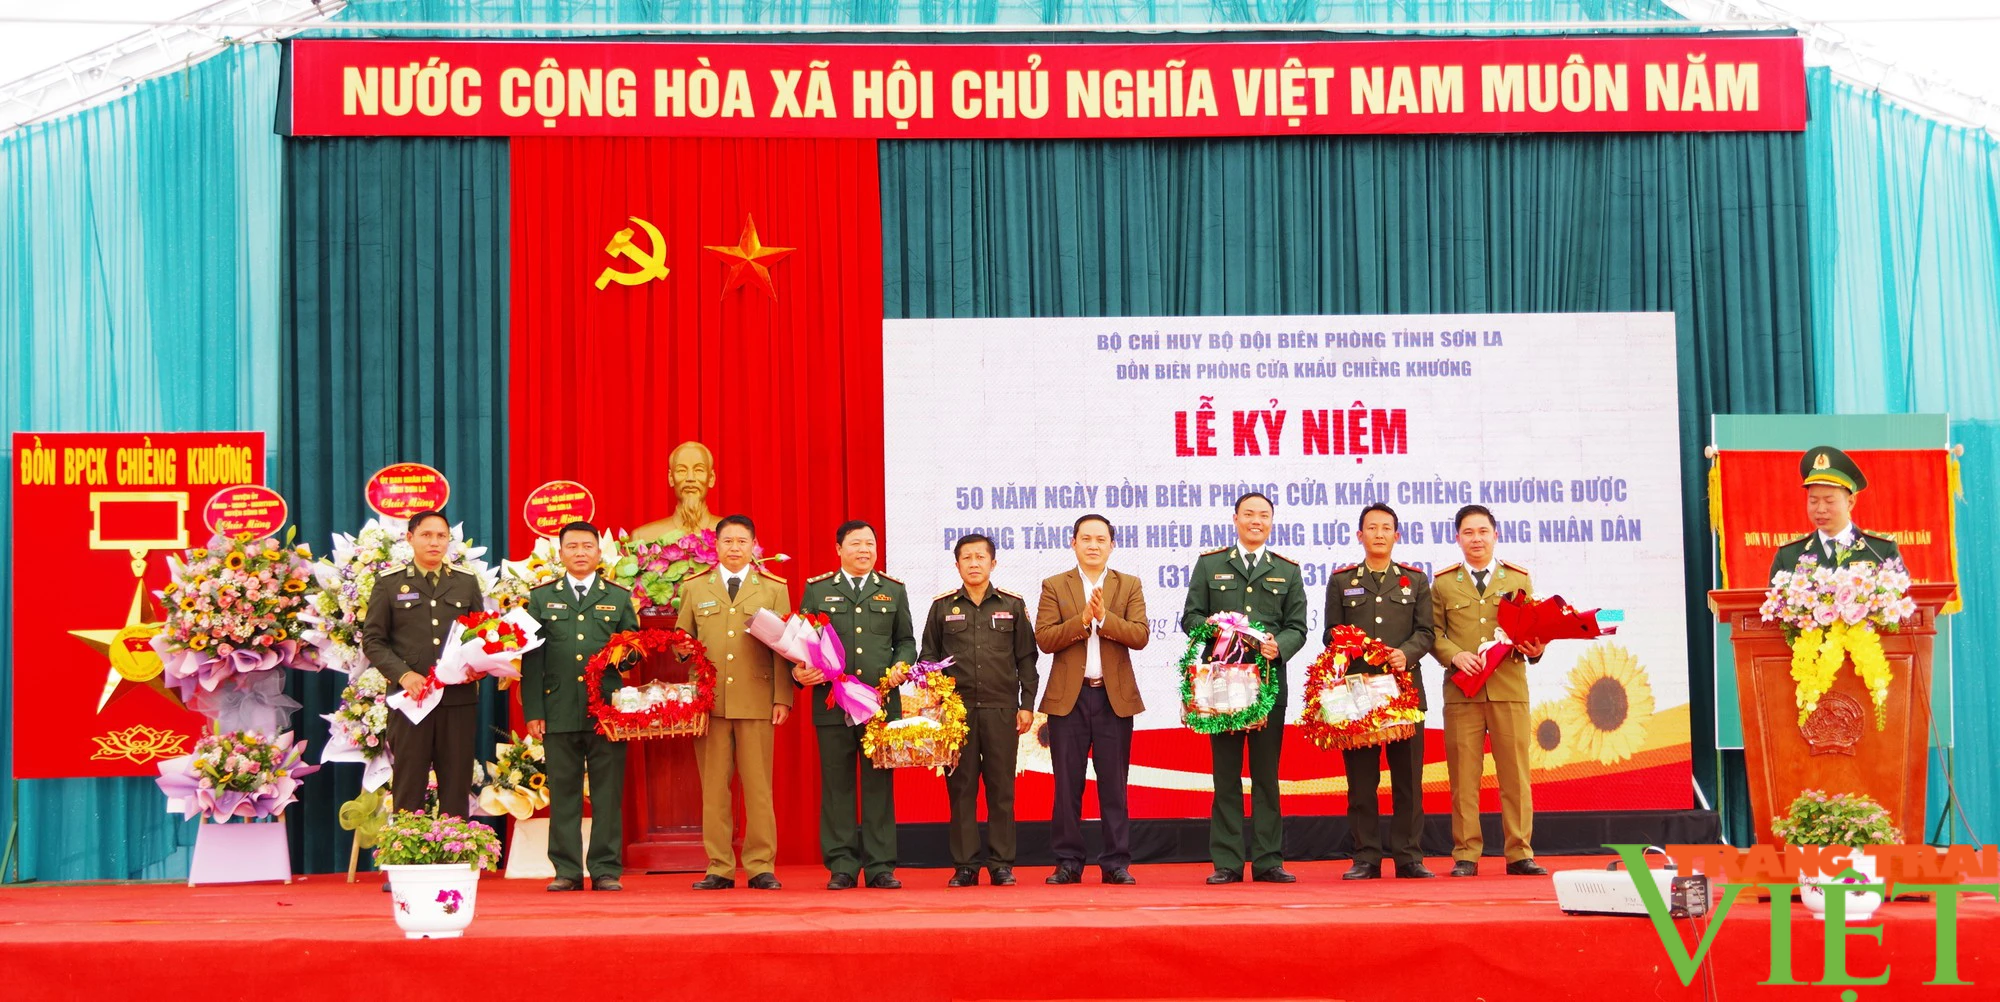 Kỷ niệm 50 năm Đồn Biên phòng cửa khẩu Chiềng Khương được phong tặng Danh hiệu Anh hùng lực lượng vũ trang nhân dân - Ảnh 4.